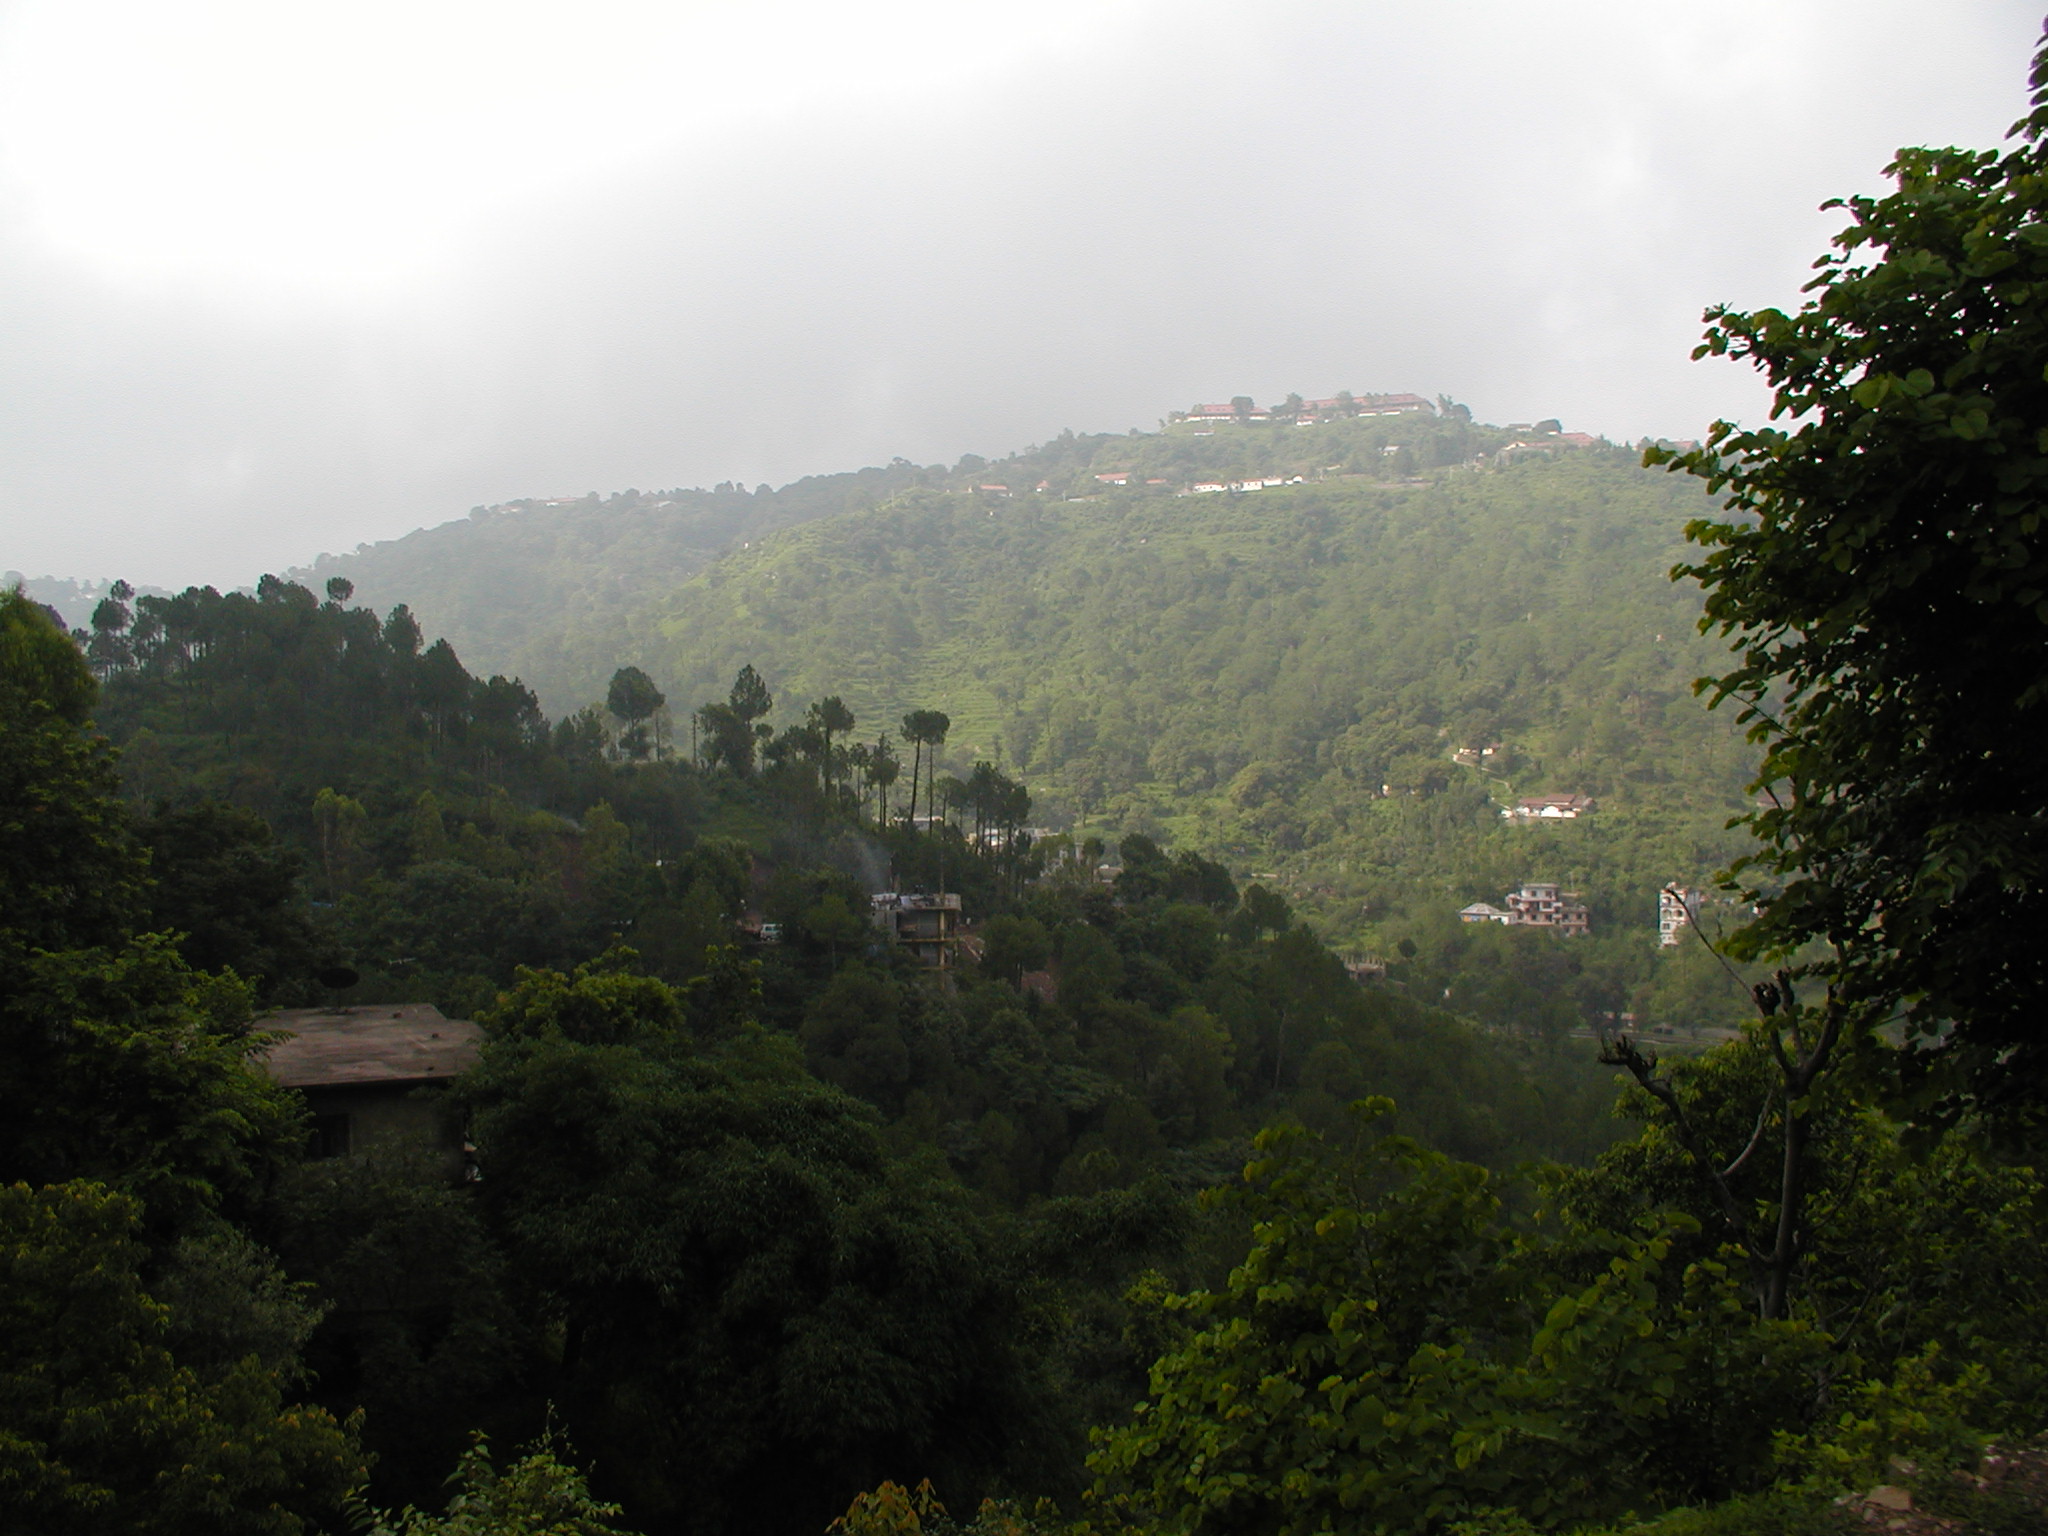 The rural, mountainous area around Shimla